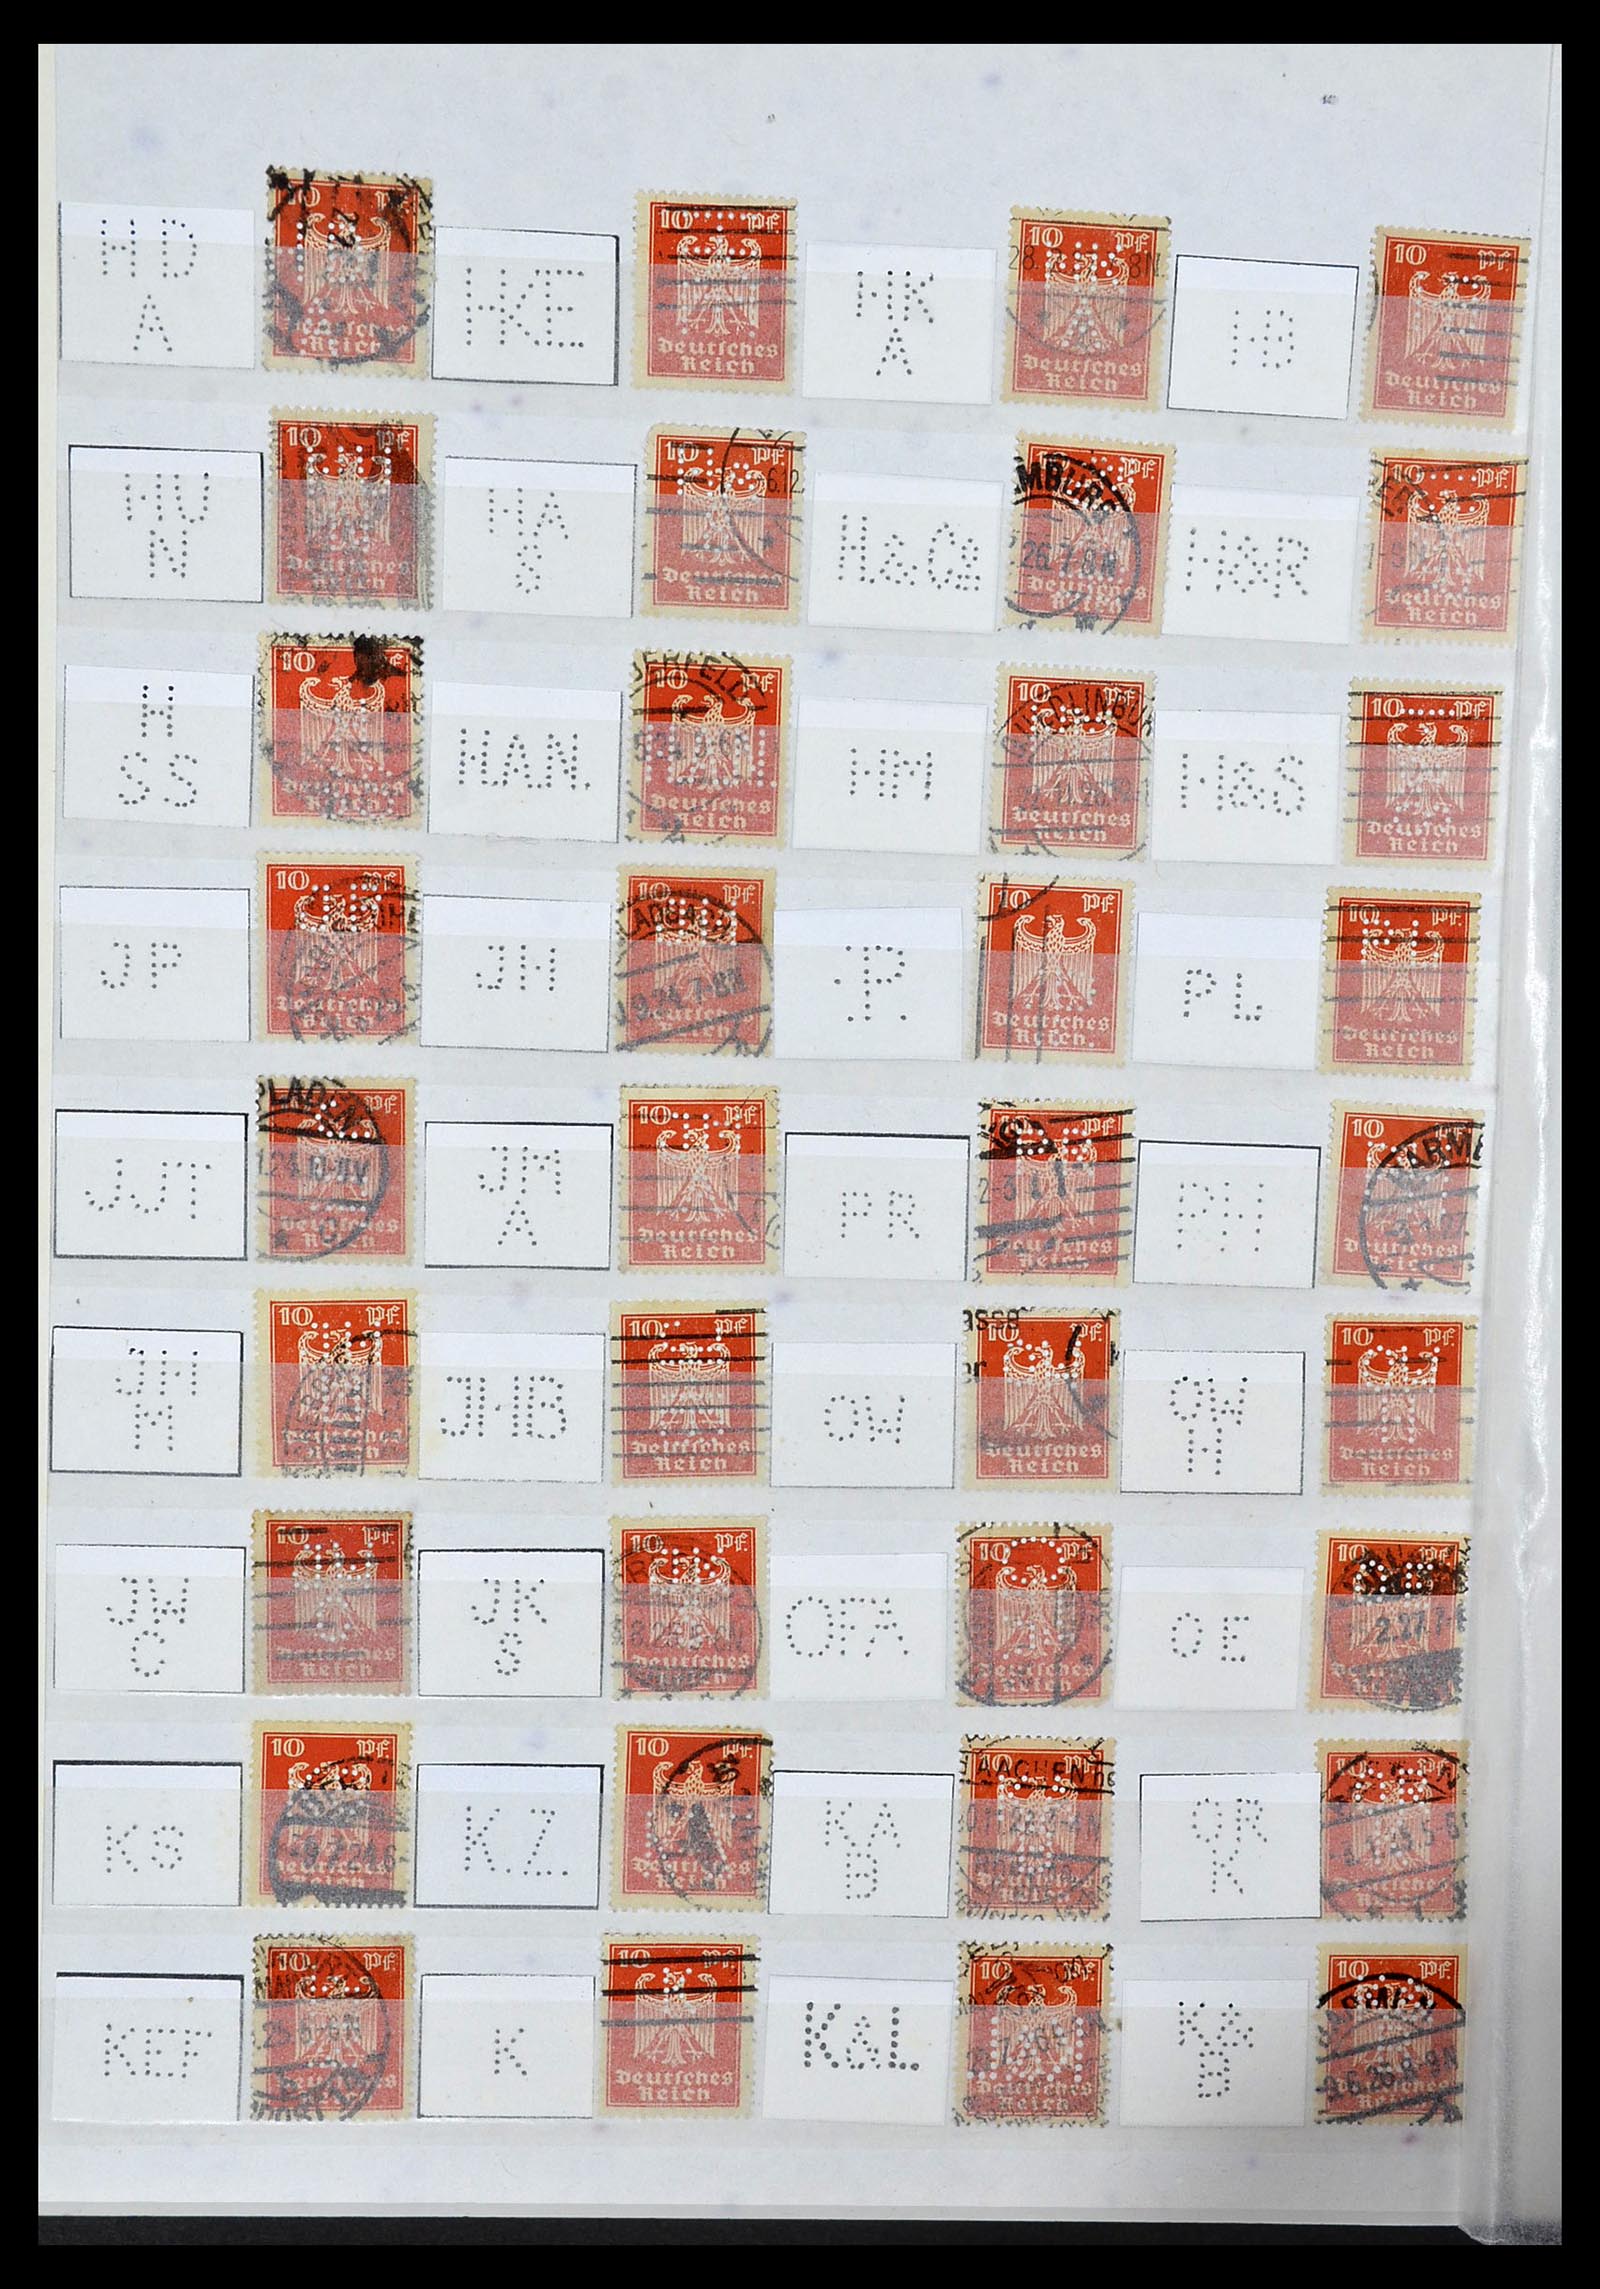 34071 028 - Stamp collection 34071 German Reich perfins 1923-1930.